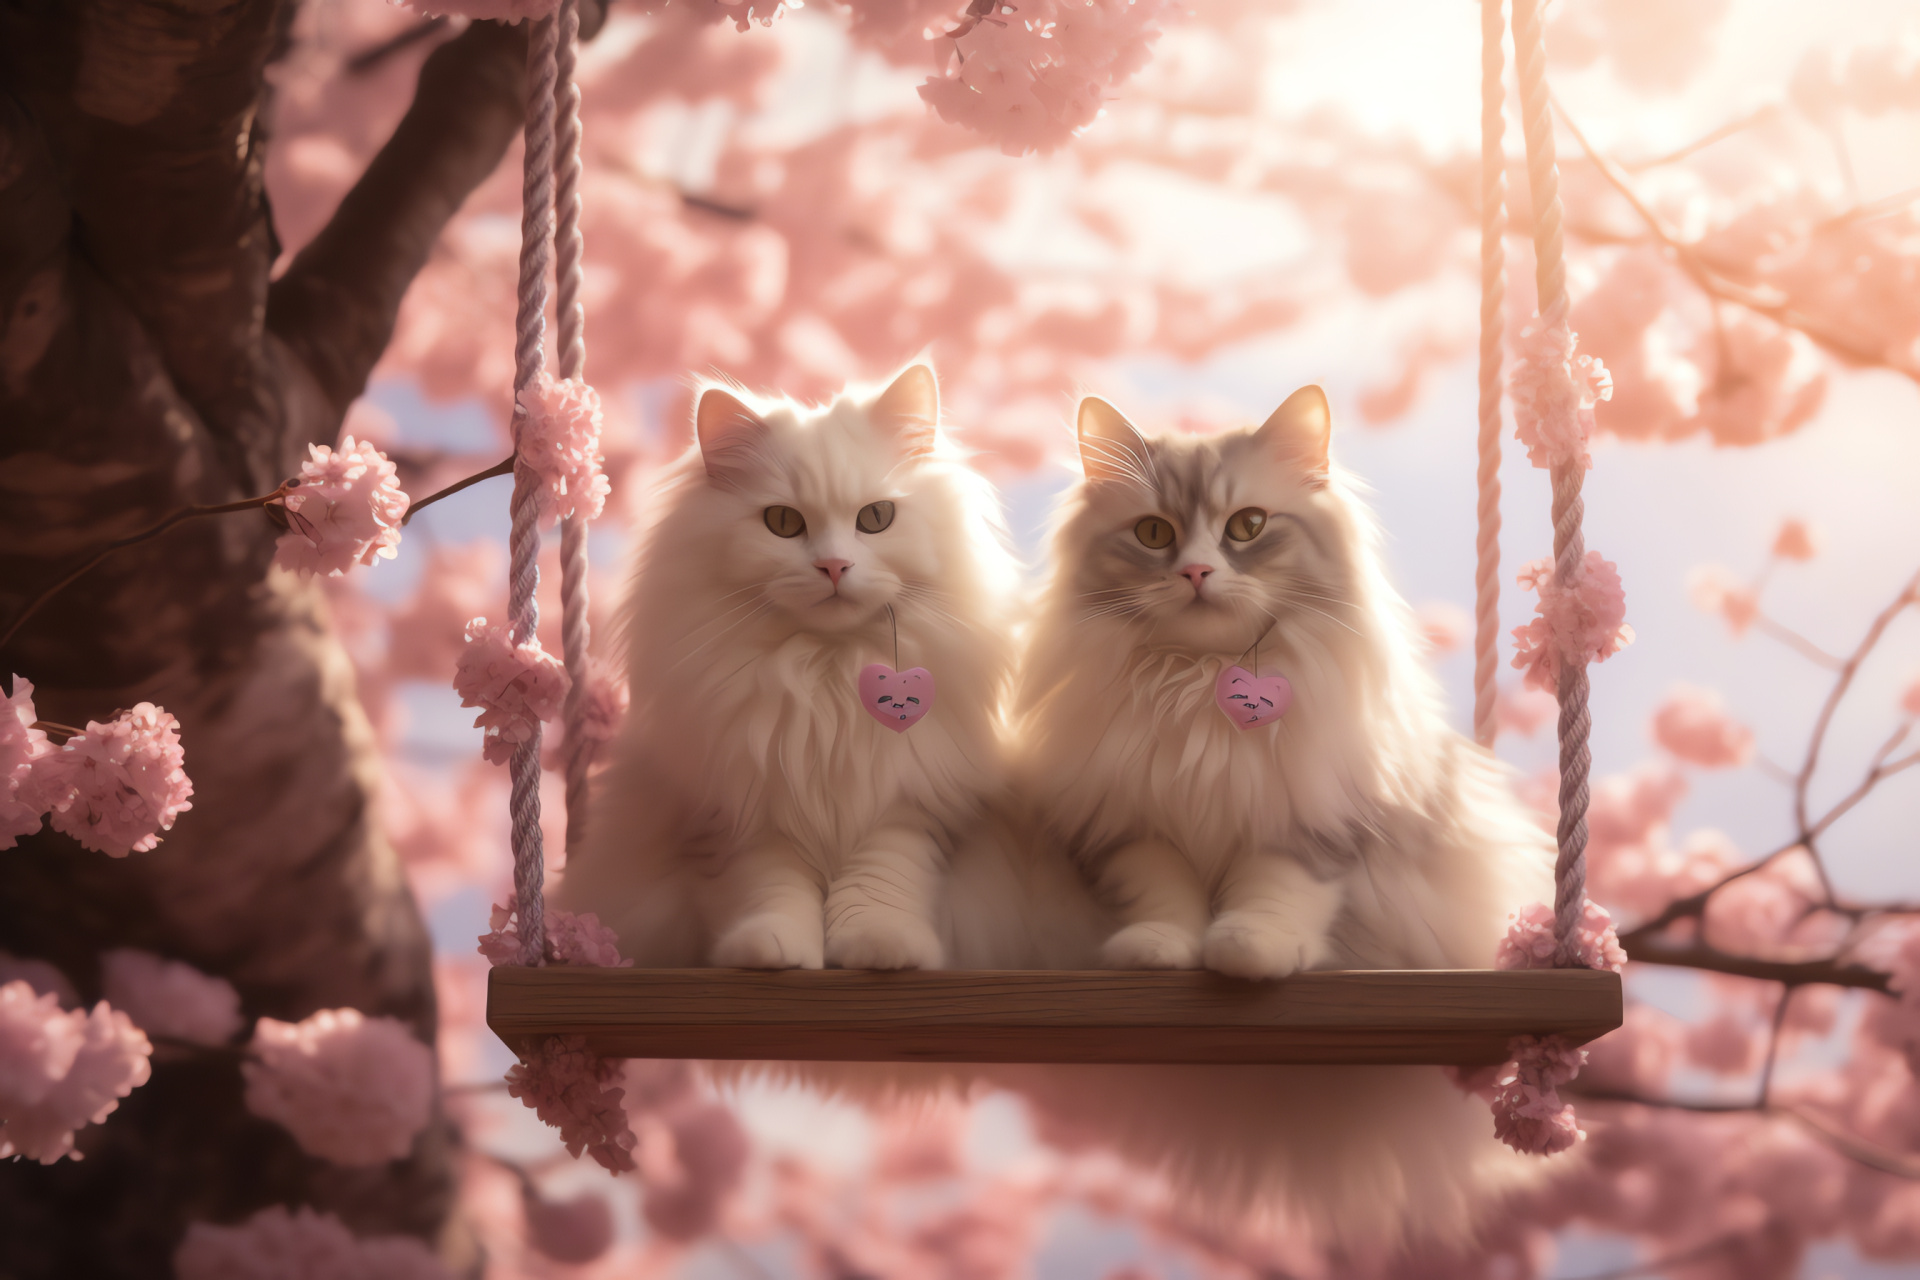 Playful Valentine cat, Blossom-filled backdrop, Garden swing, Floral heart decor, Springtime love, HD Desktop Image